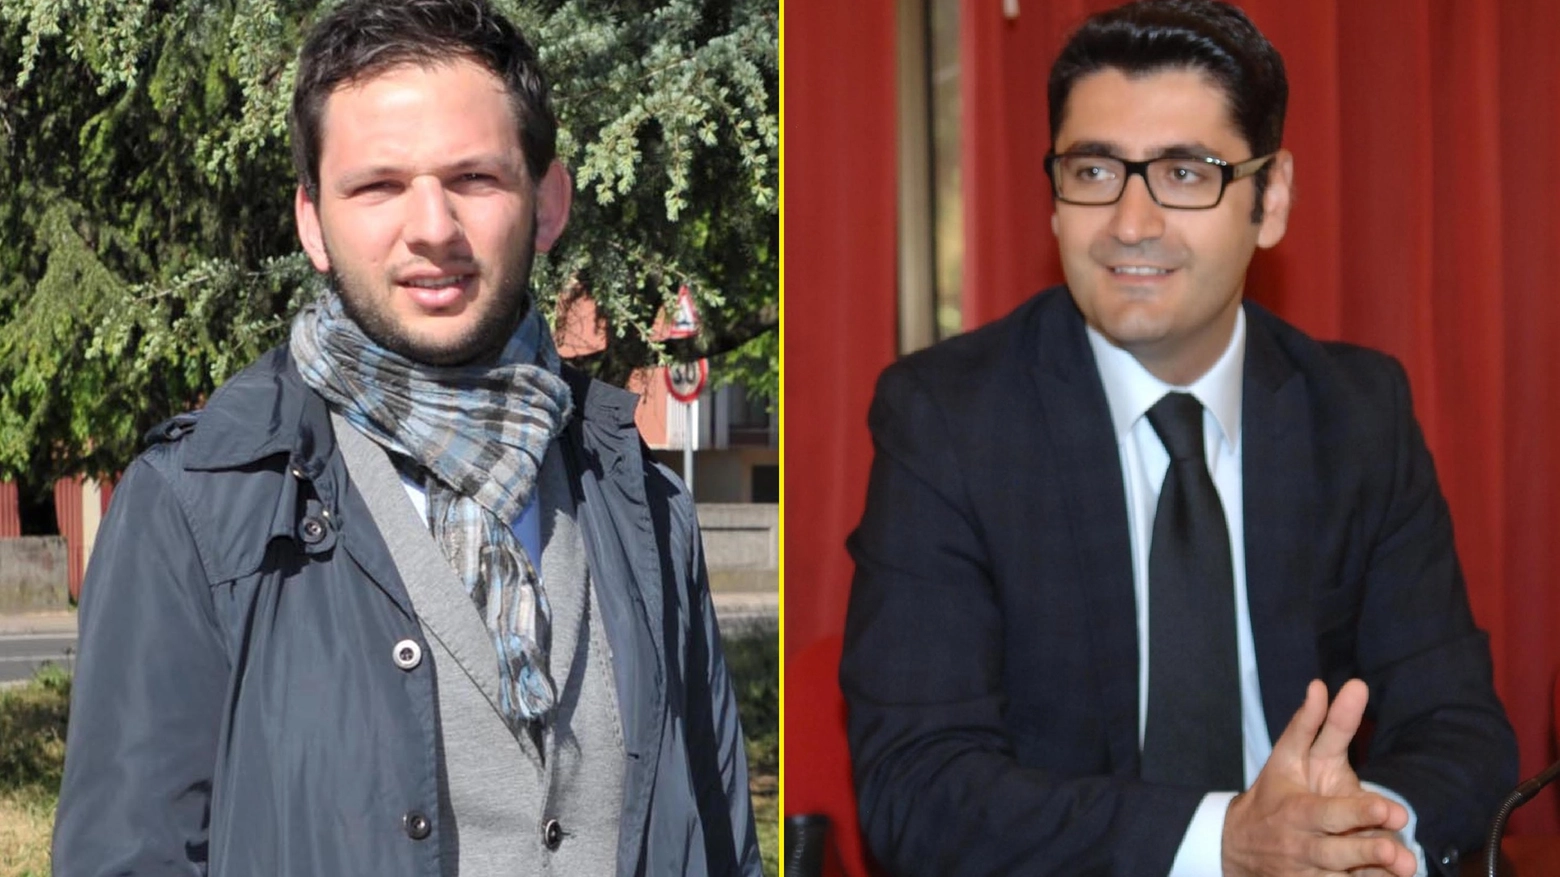 Marco Segala e Alessandro Lorenzano, al ballottaggio a San Giuliano